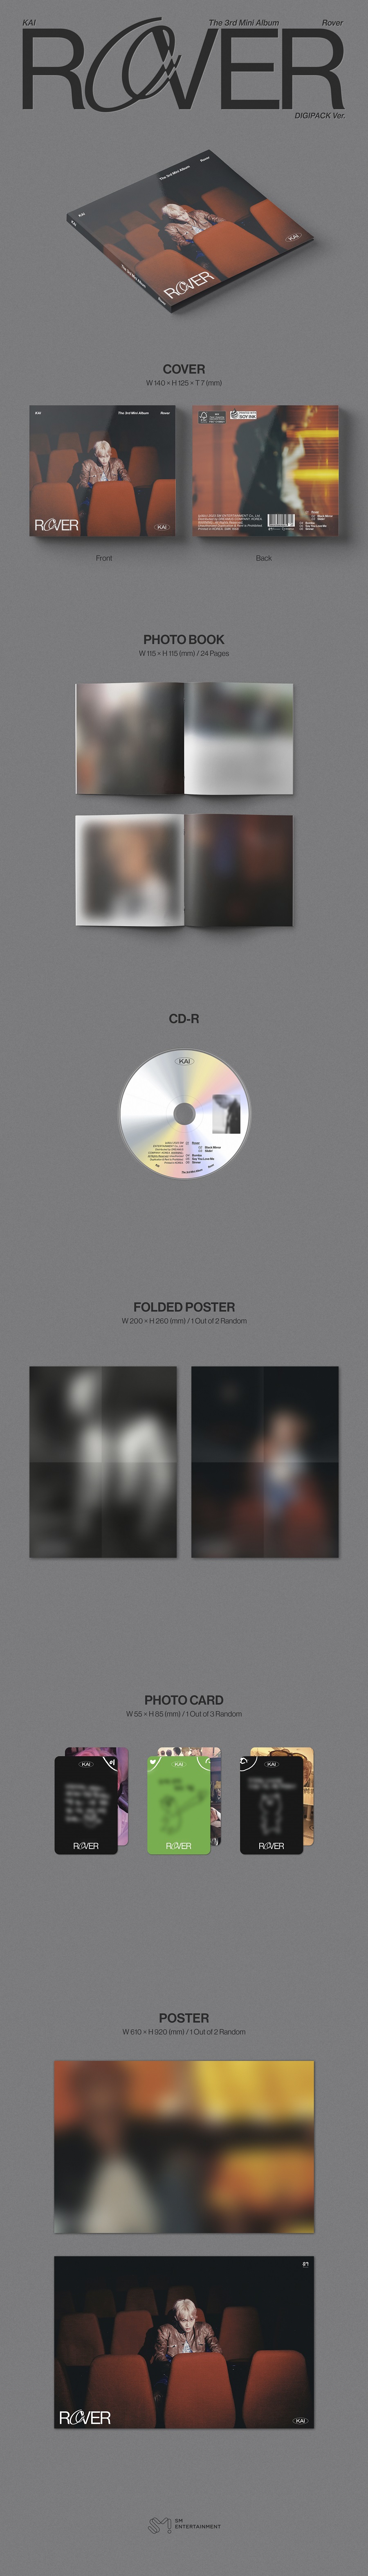 카이(KAI) - 미니앨범 3집_’Rover’ (Digipack Ver.)